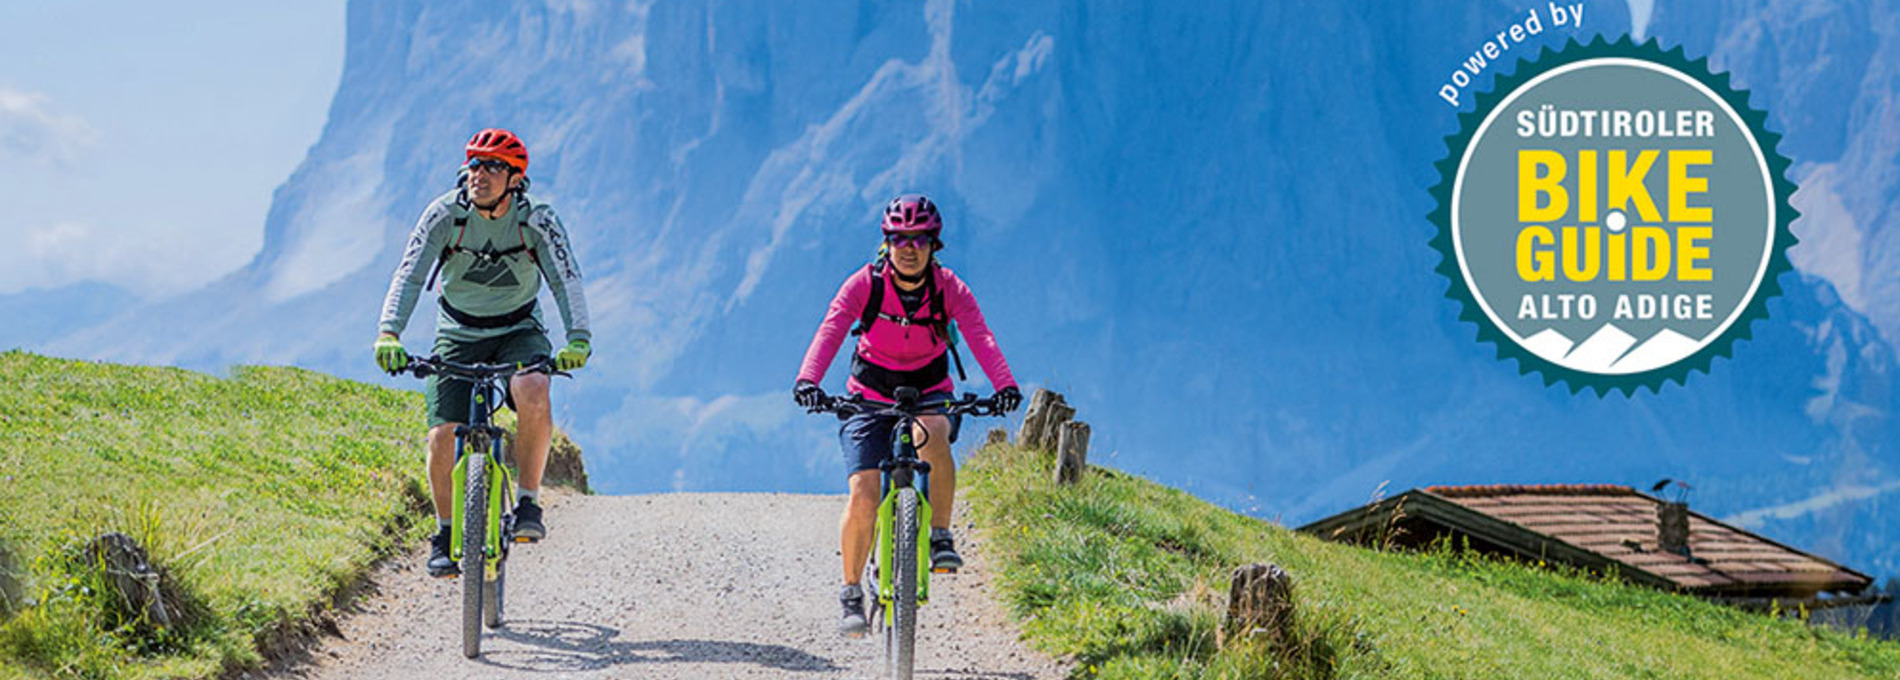 Das Buch Biken in Südtirol - Dolomiten auch bei H&H Shop erhältlich